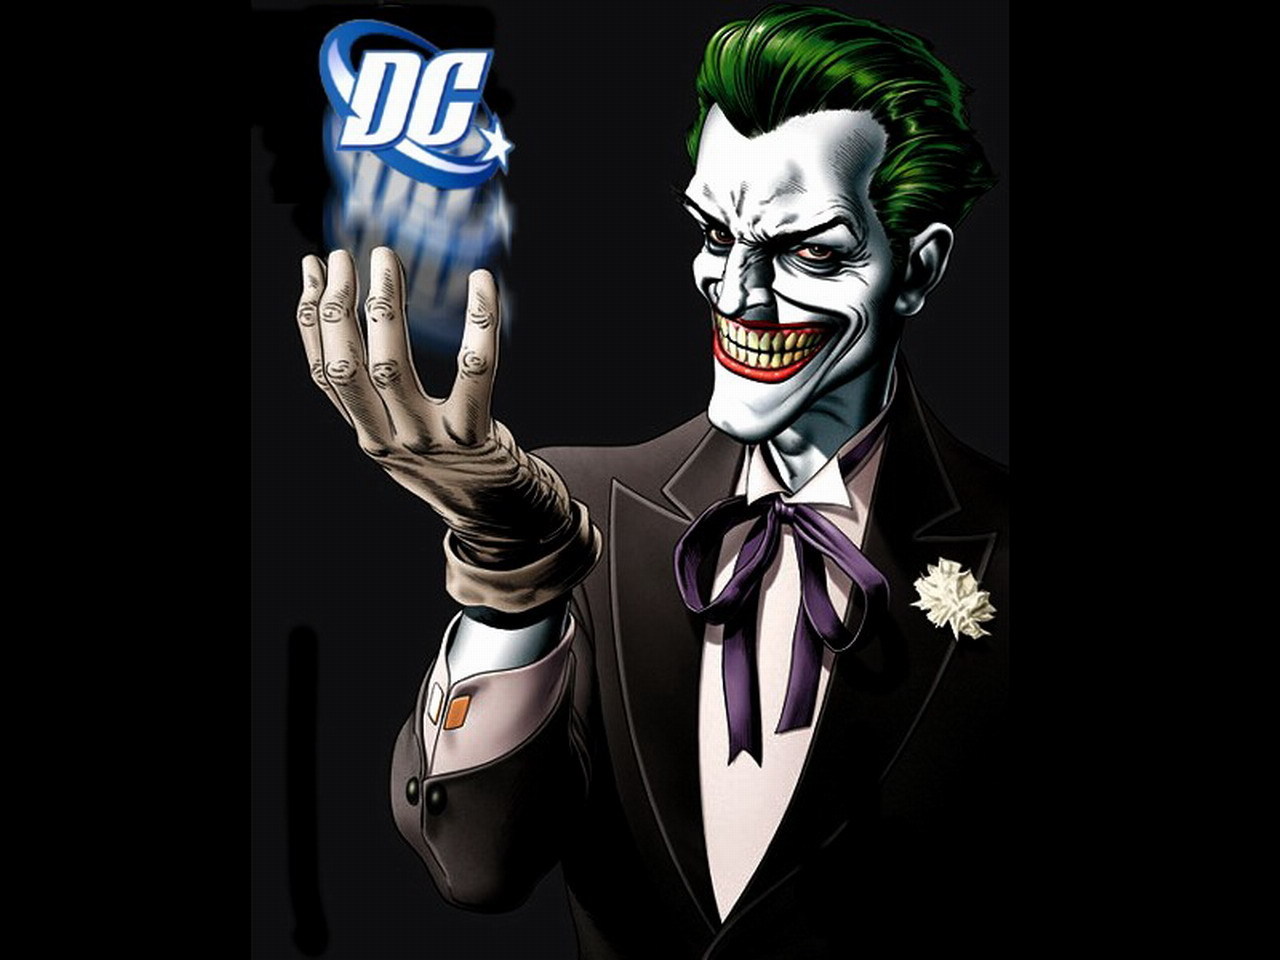 Batman Villains images Joker HD wallpaper and background photos